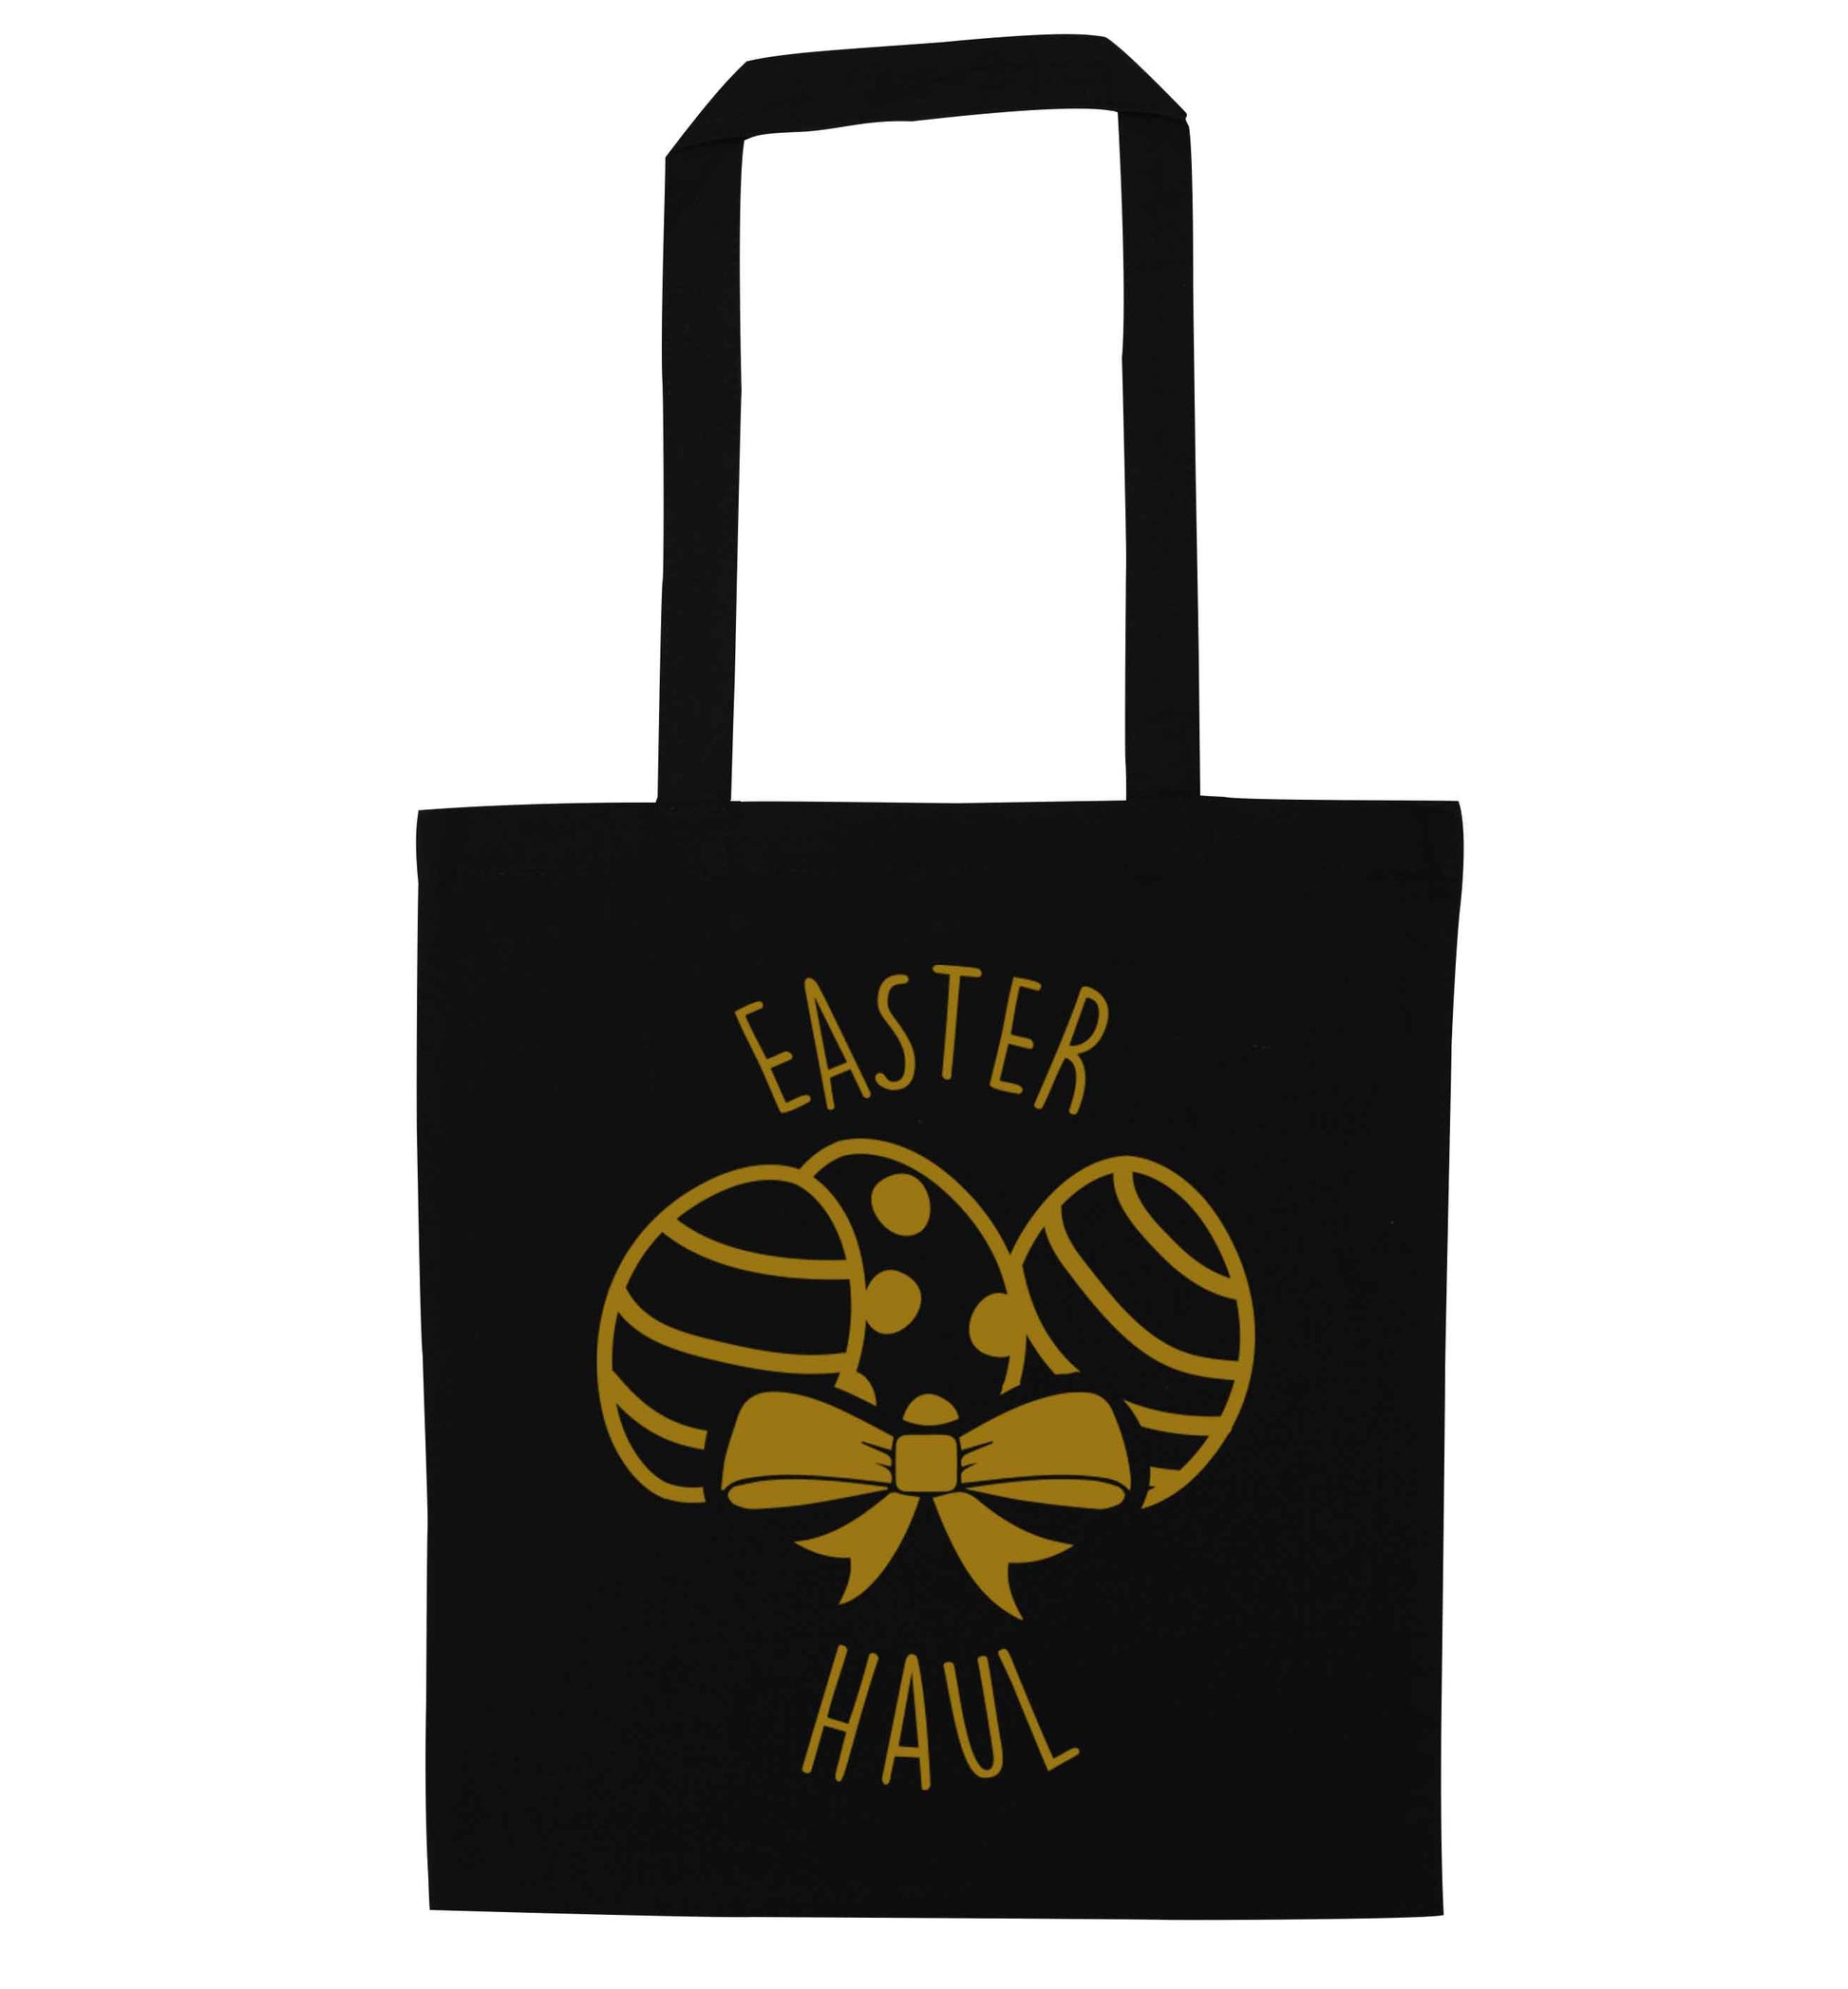 Easter haul black tote bag